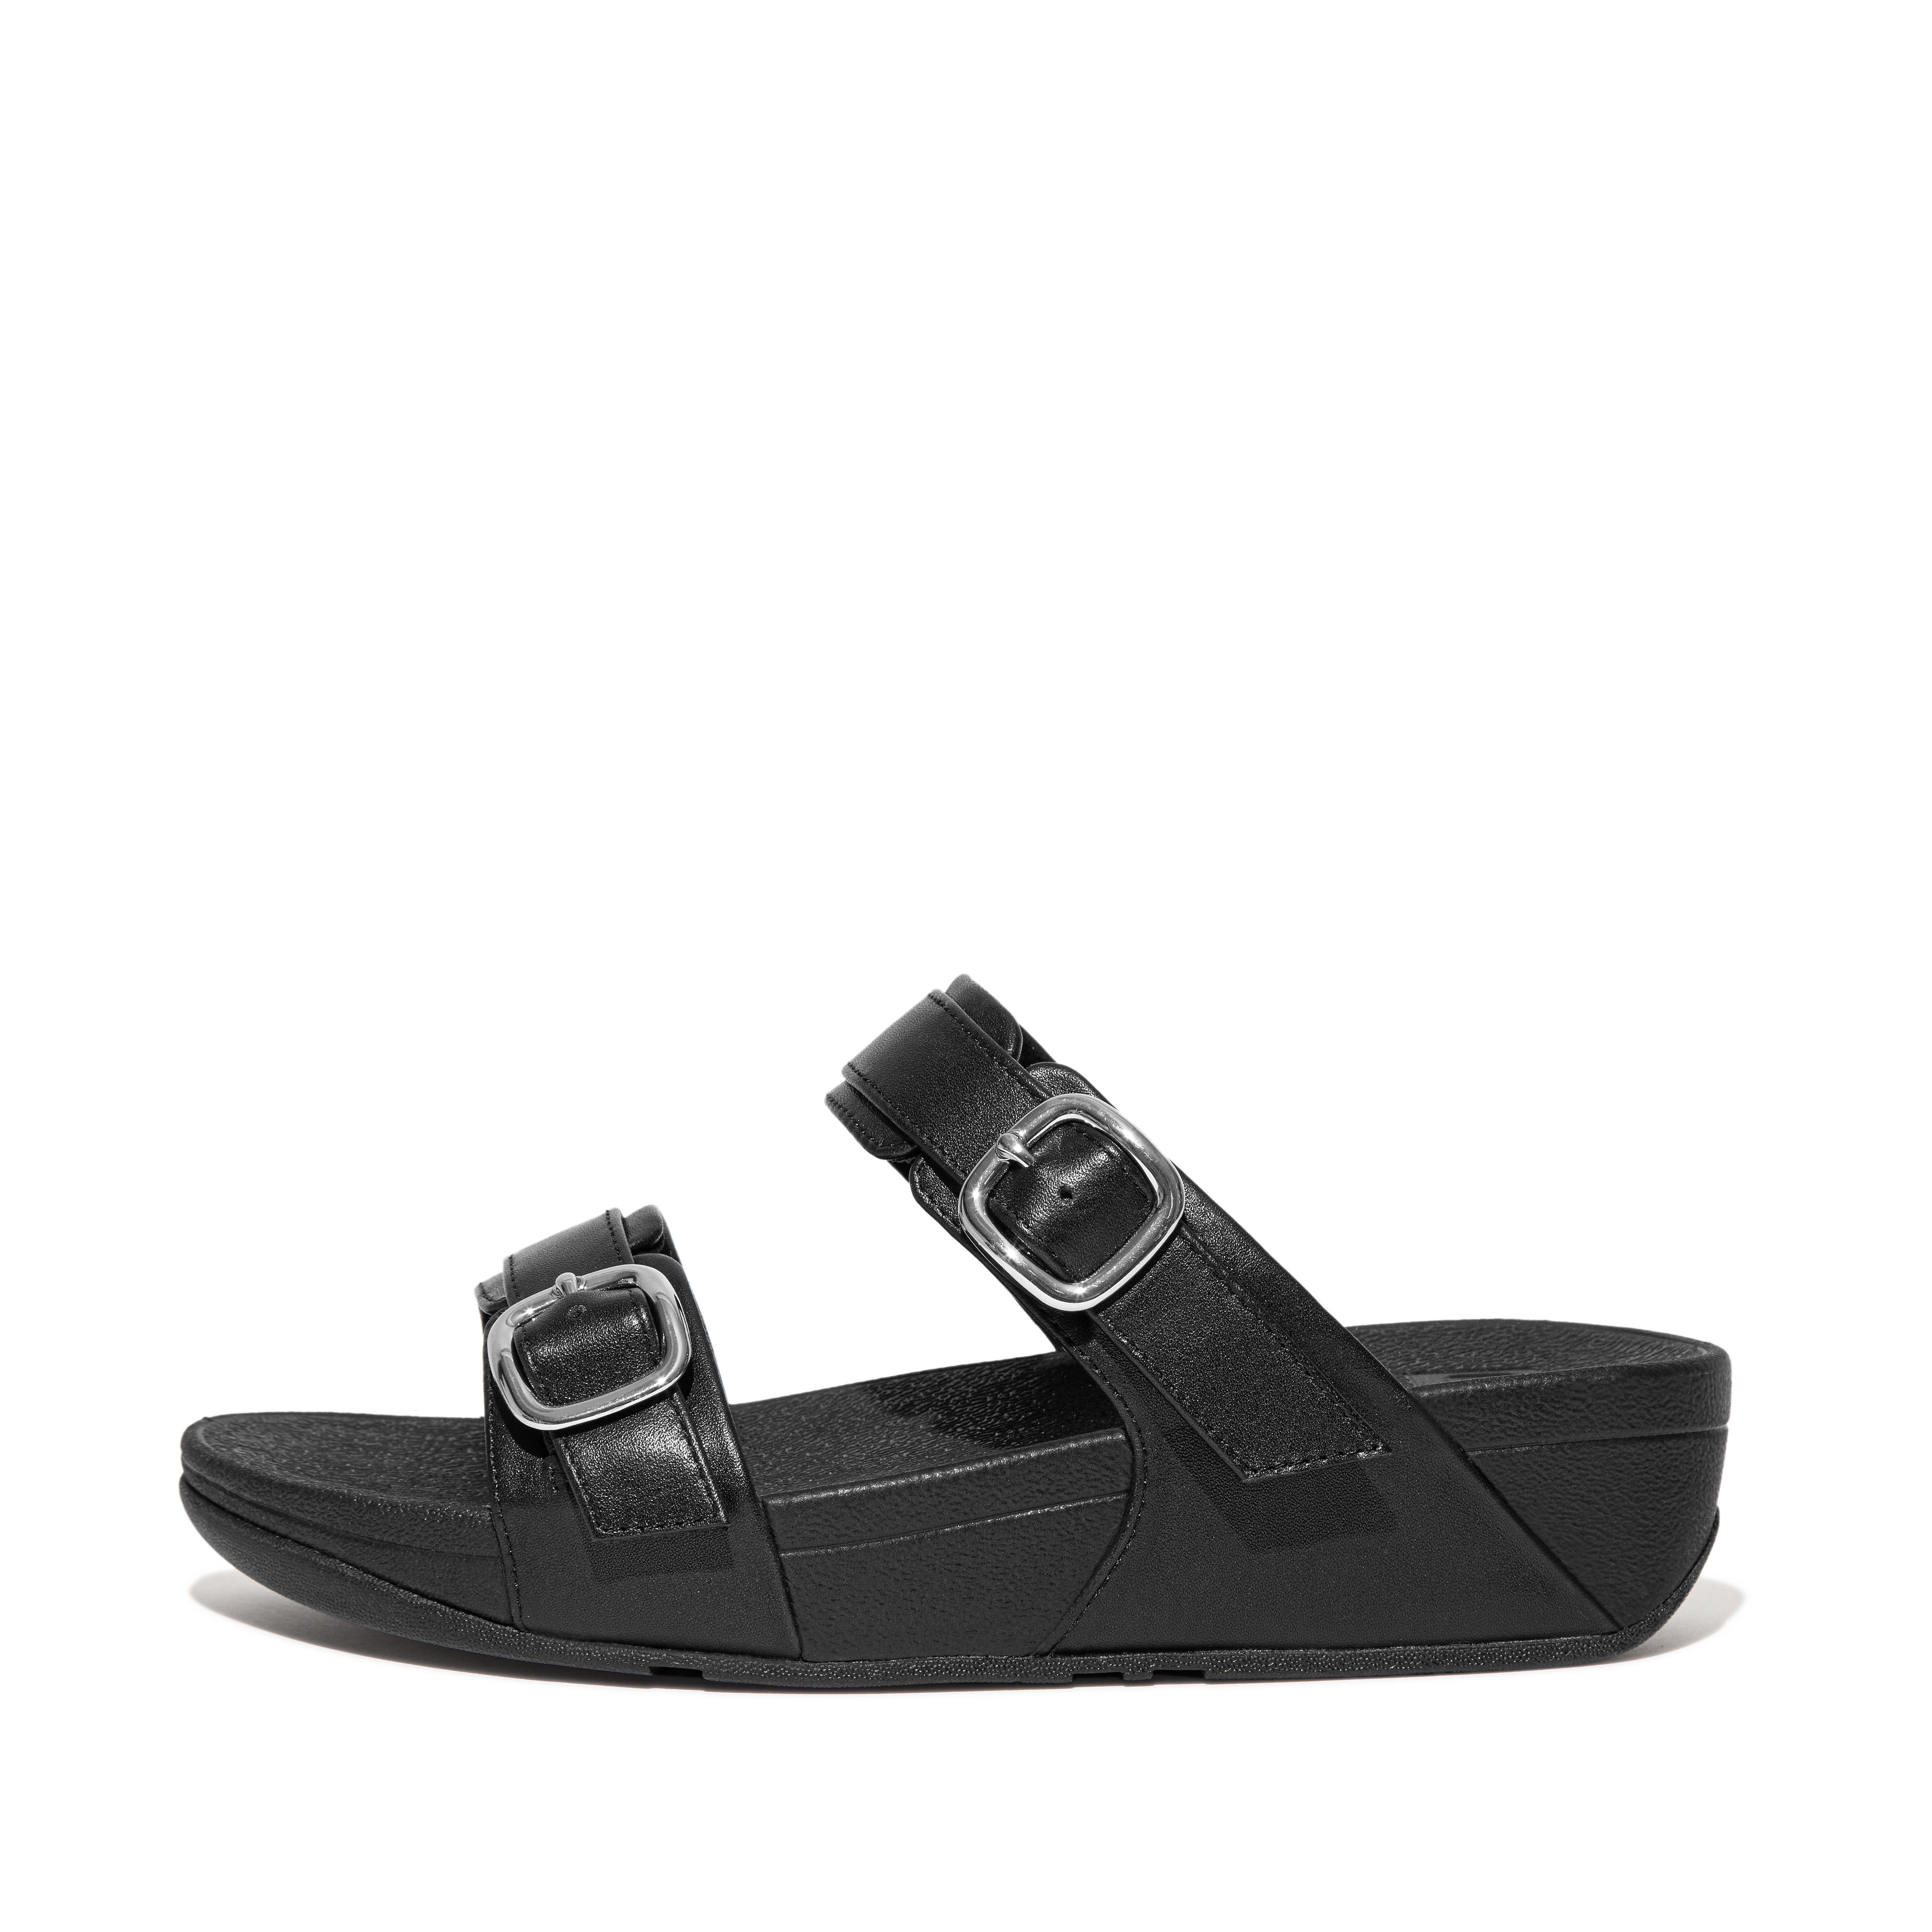 핏플랍 슬라이드 FitFlop LULU Adjustable Leather Slides,All Black